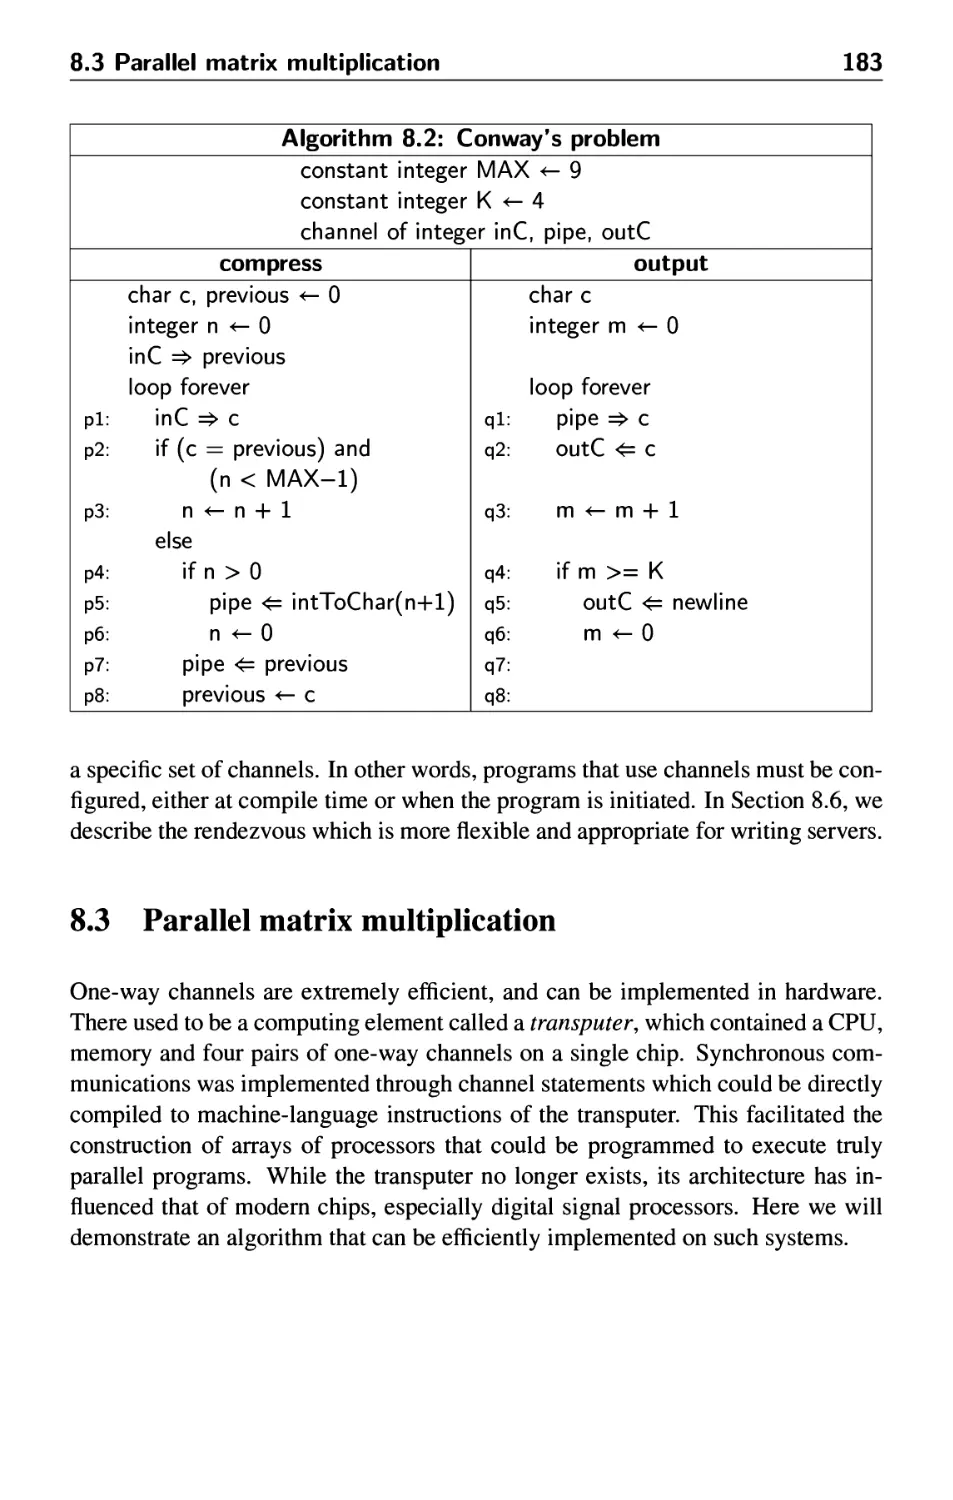 8.3 Parallel matrix multiplication